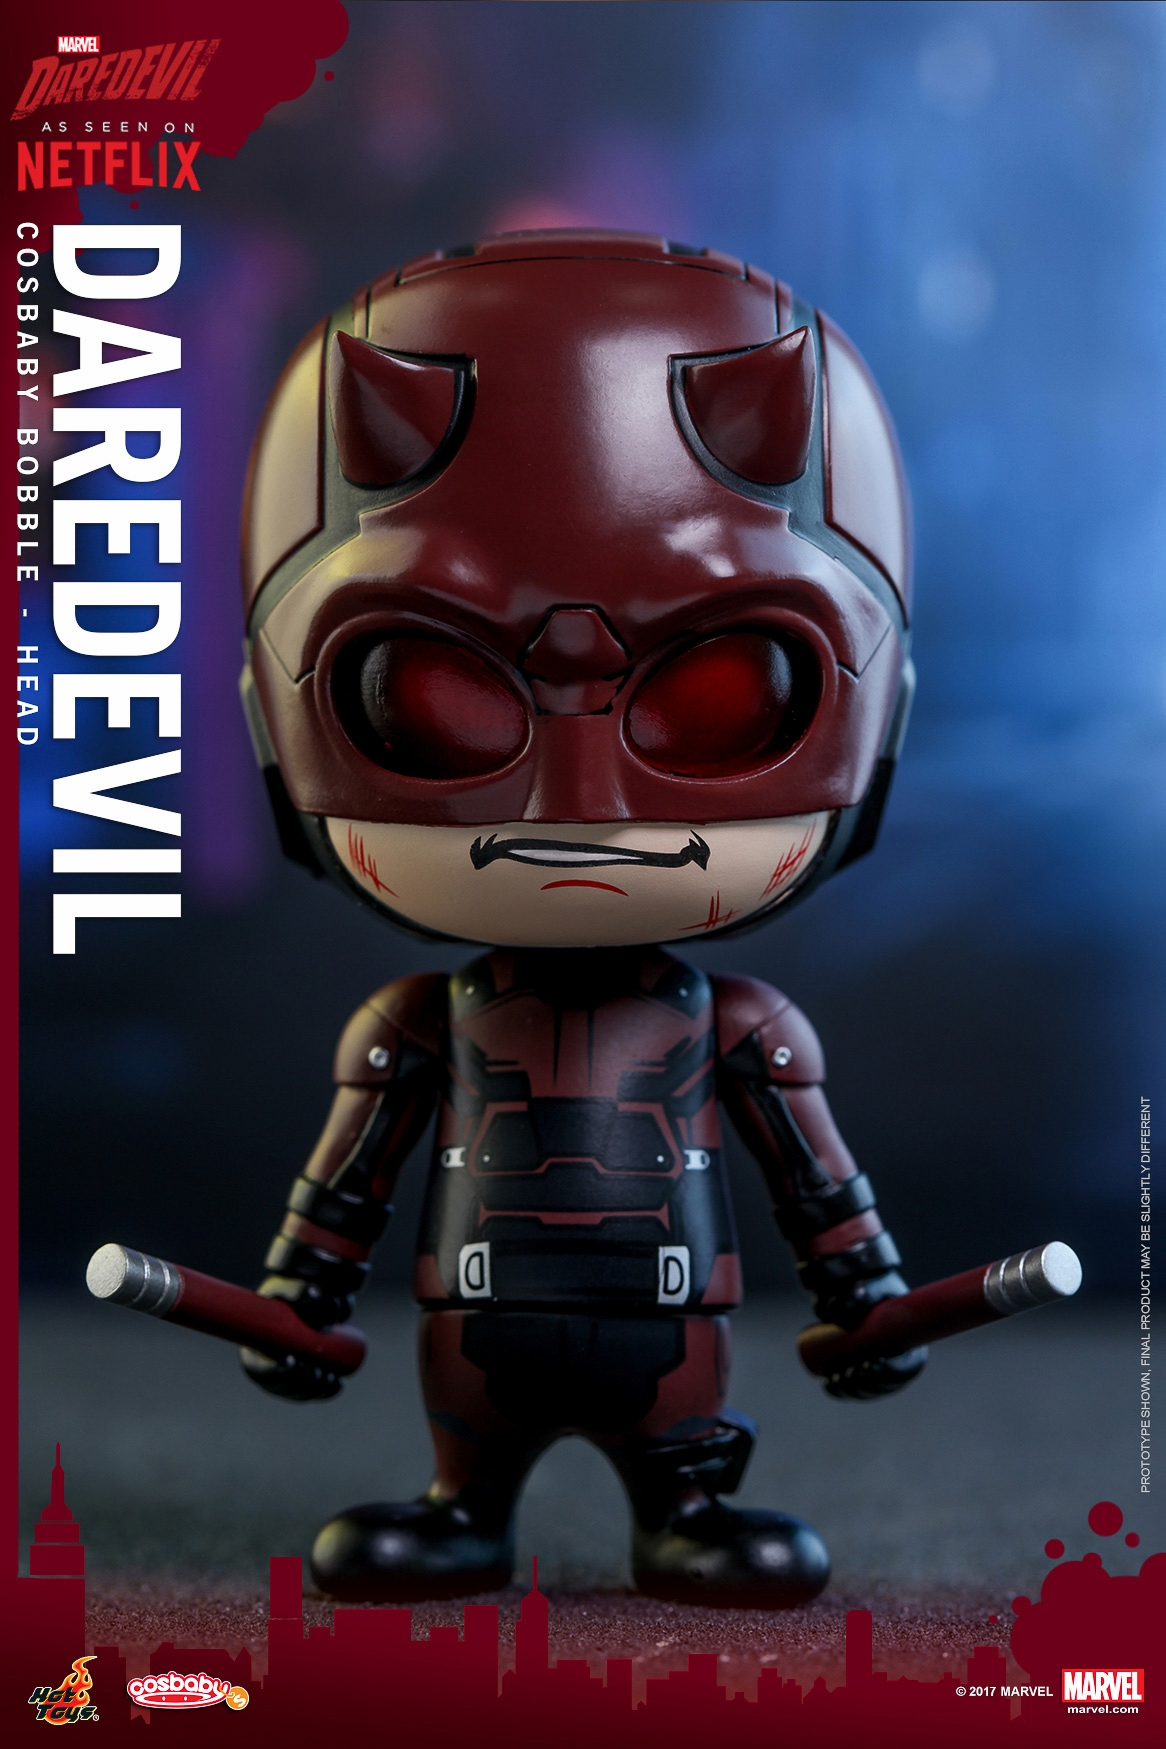 Hot-Toys-Netflix-Marvel-Daredevil-Cosbaby-Set-012.jpg